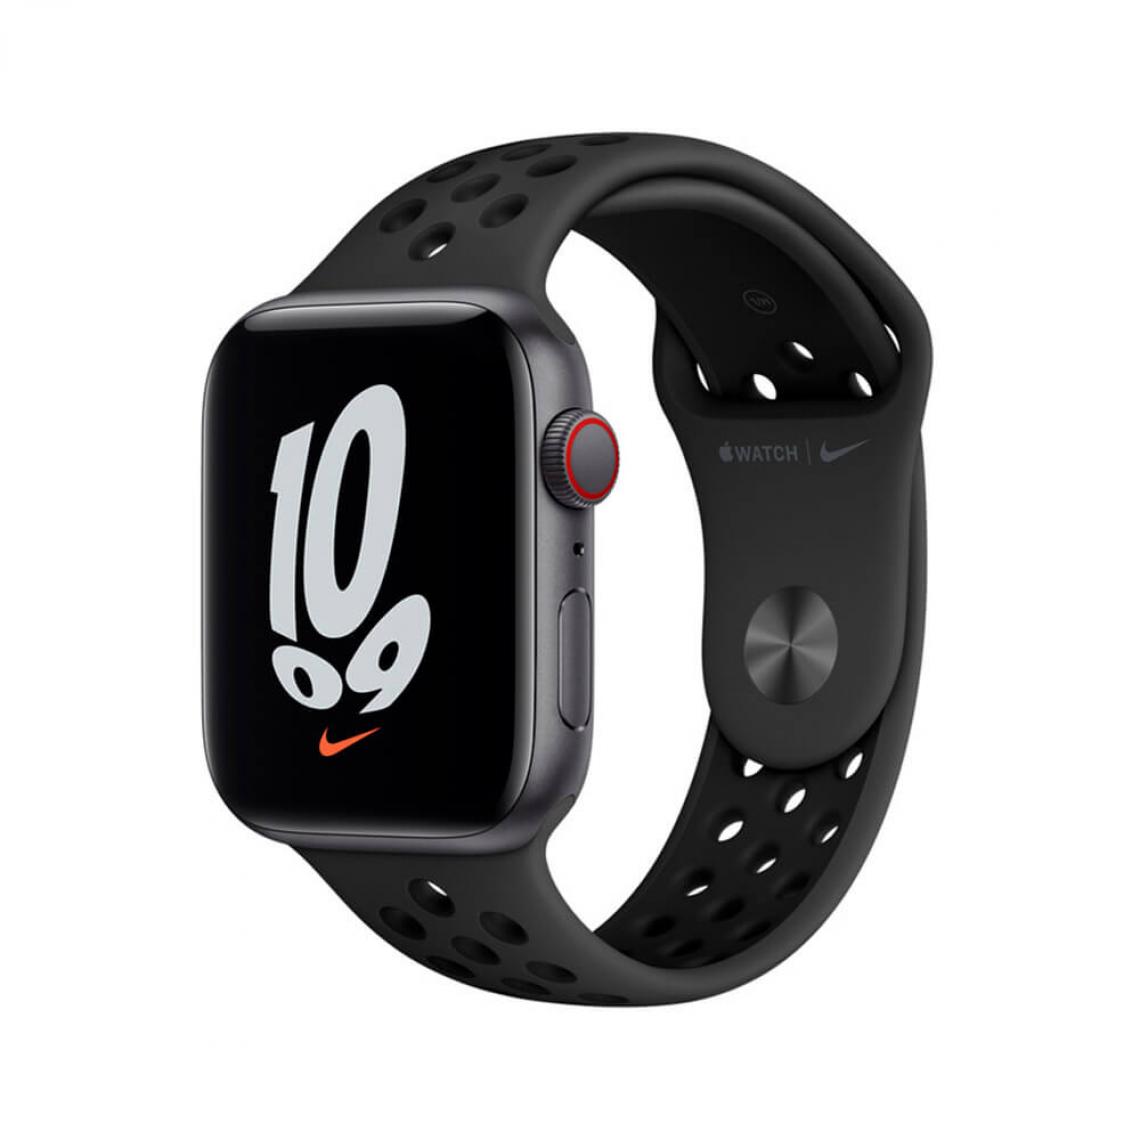 Apple - Apple Watch SE Nike (GPS + Cellulaire) 44mm Aluminium Gris Espace et Noir Anthracite Bande Sport - Apple Watch